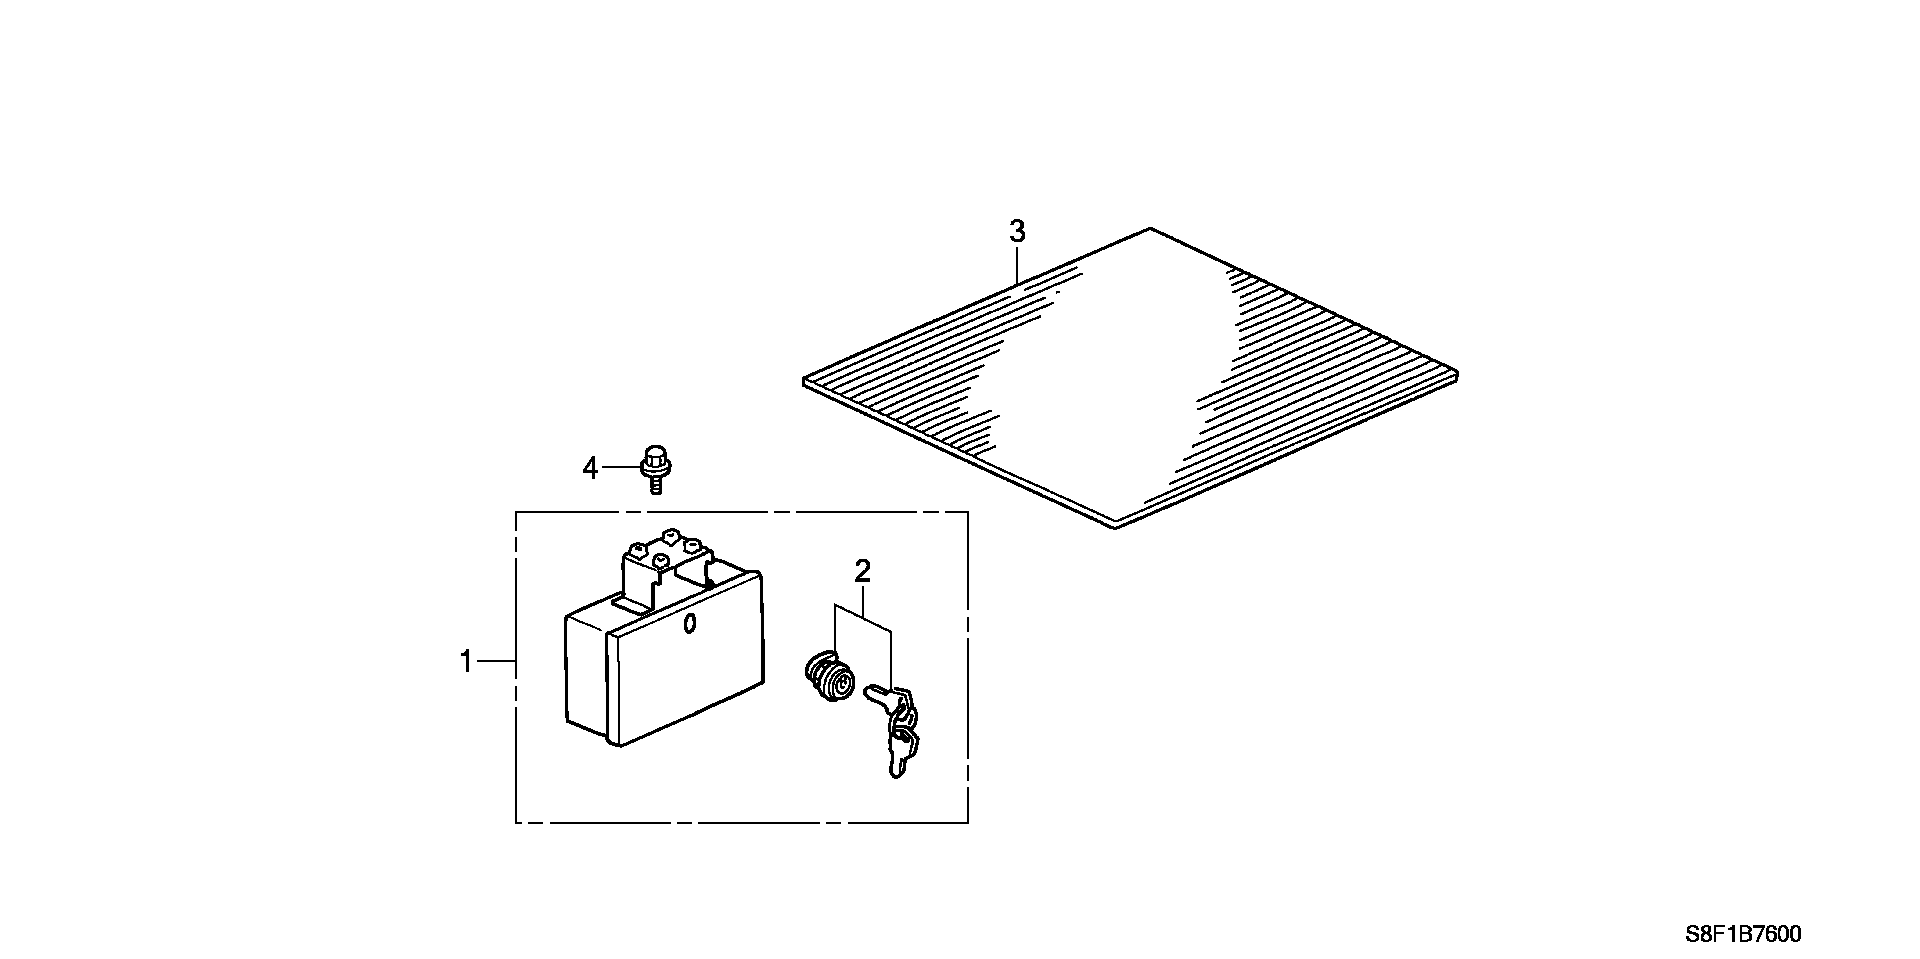 SIDE BOX/ FLOOR MAT ( 2 WHEEL TRANSPORTATION )